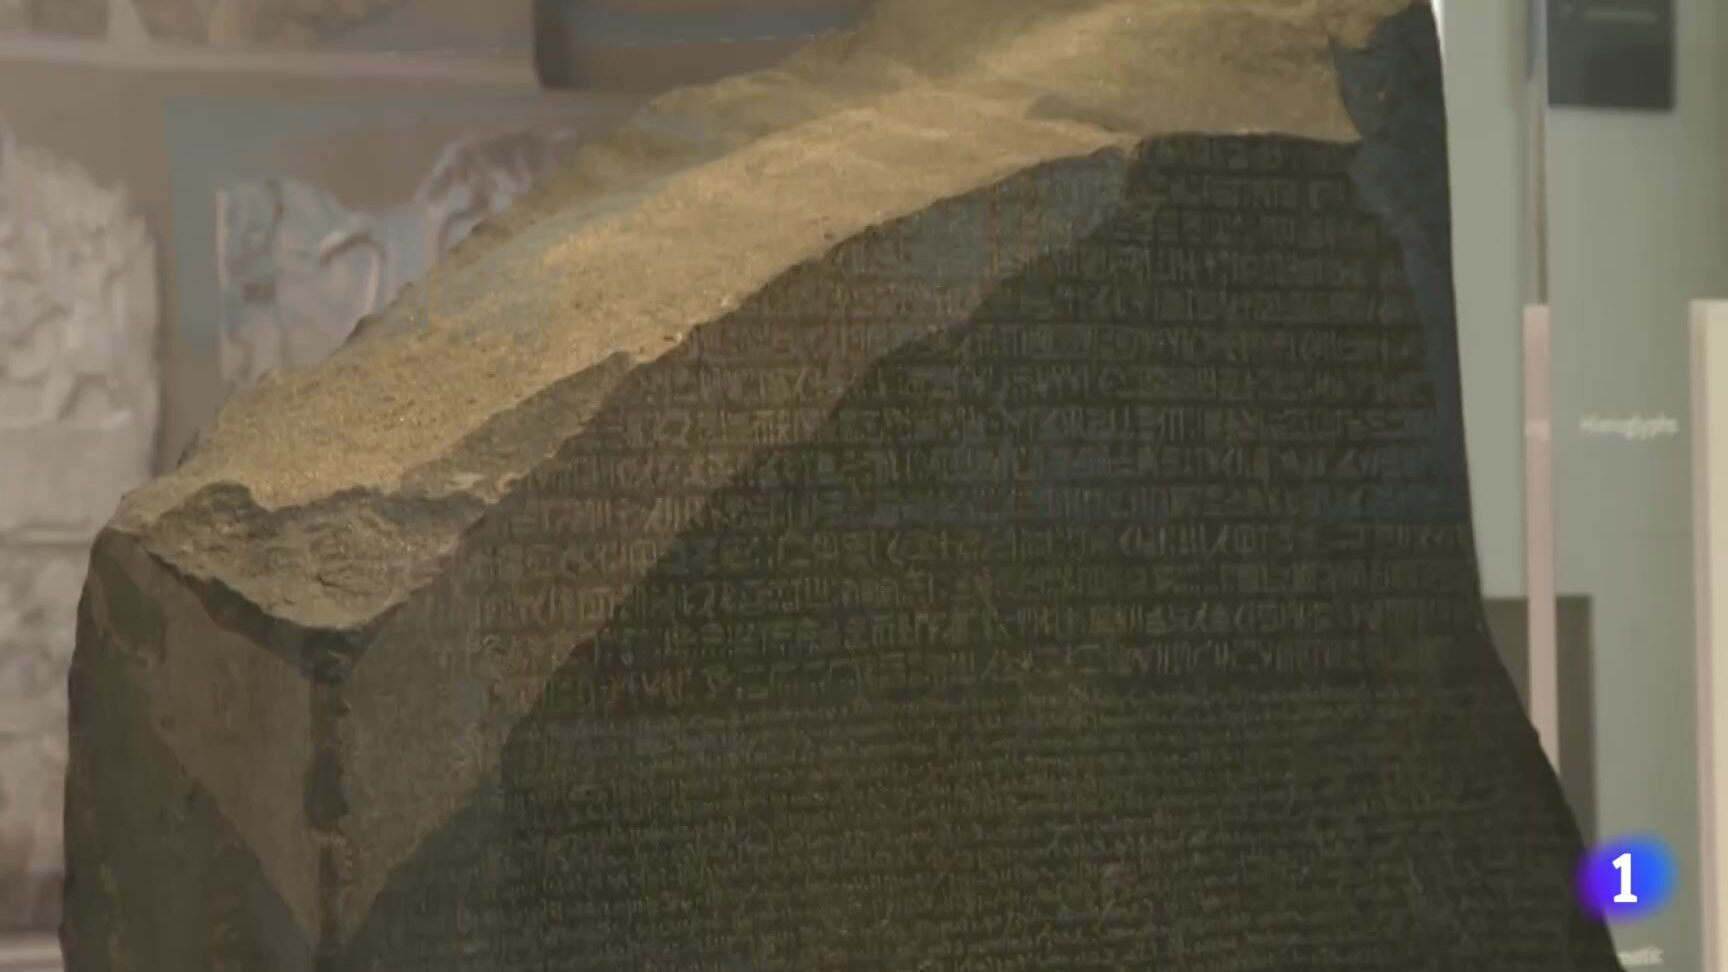 La Piedra Rosetta: Historia y Significado en el Desciframiento de Jeroglíficos Egipcios